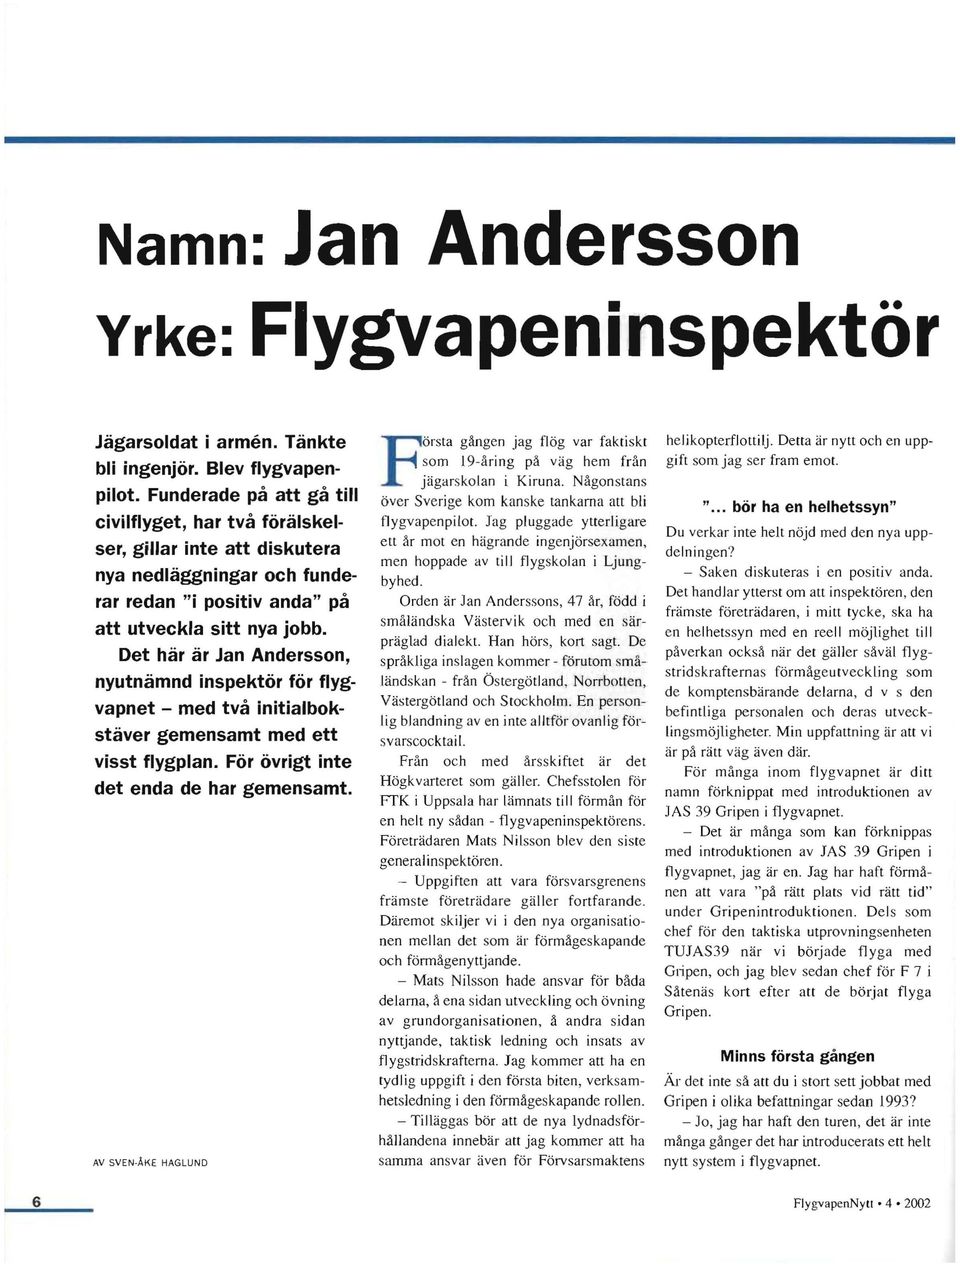 Det här är Jan Andersson, nyutnämnd inspektör för flygvapnet - med två initialbokstäver gemensamt med ett visst flygplan. För övrigt inte det enda de har gemensamt.